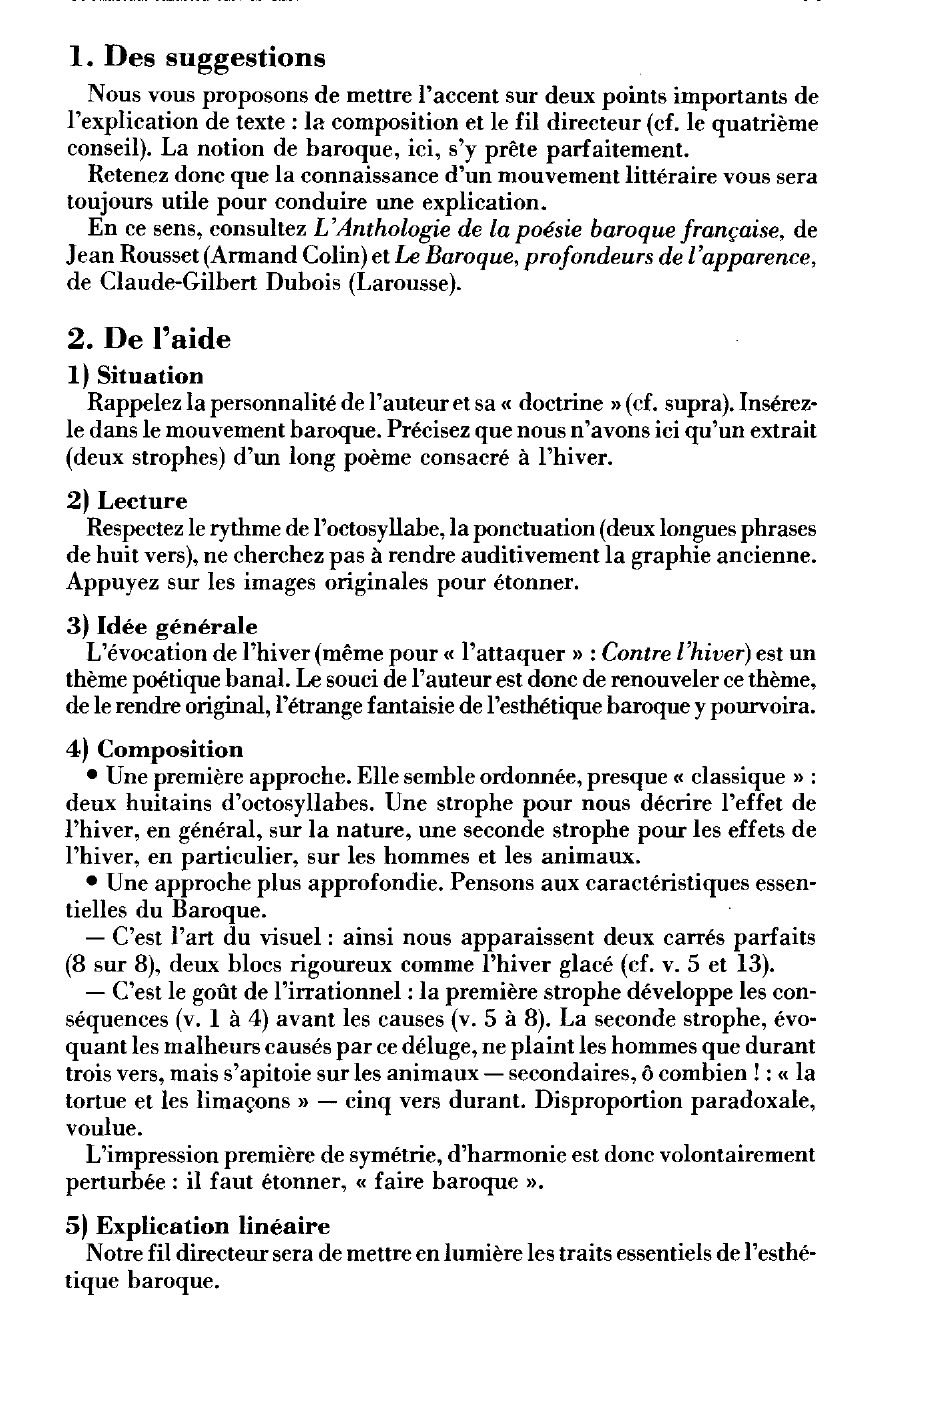 Prévisualisation du document L'hiver: Théophile de Viau, Contre l'hiver, strophes 5 et 6.